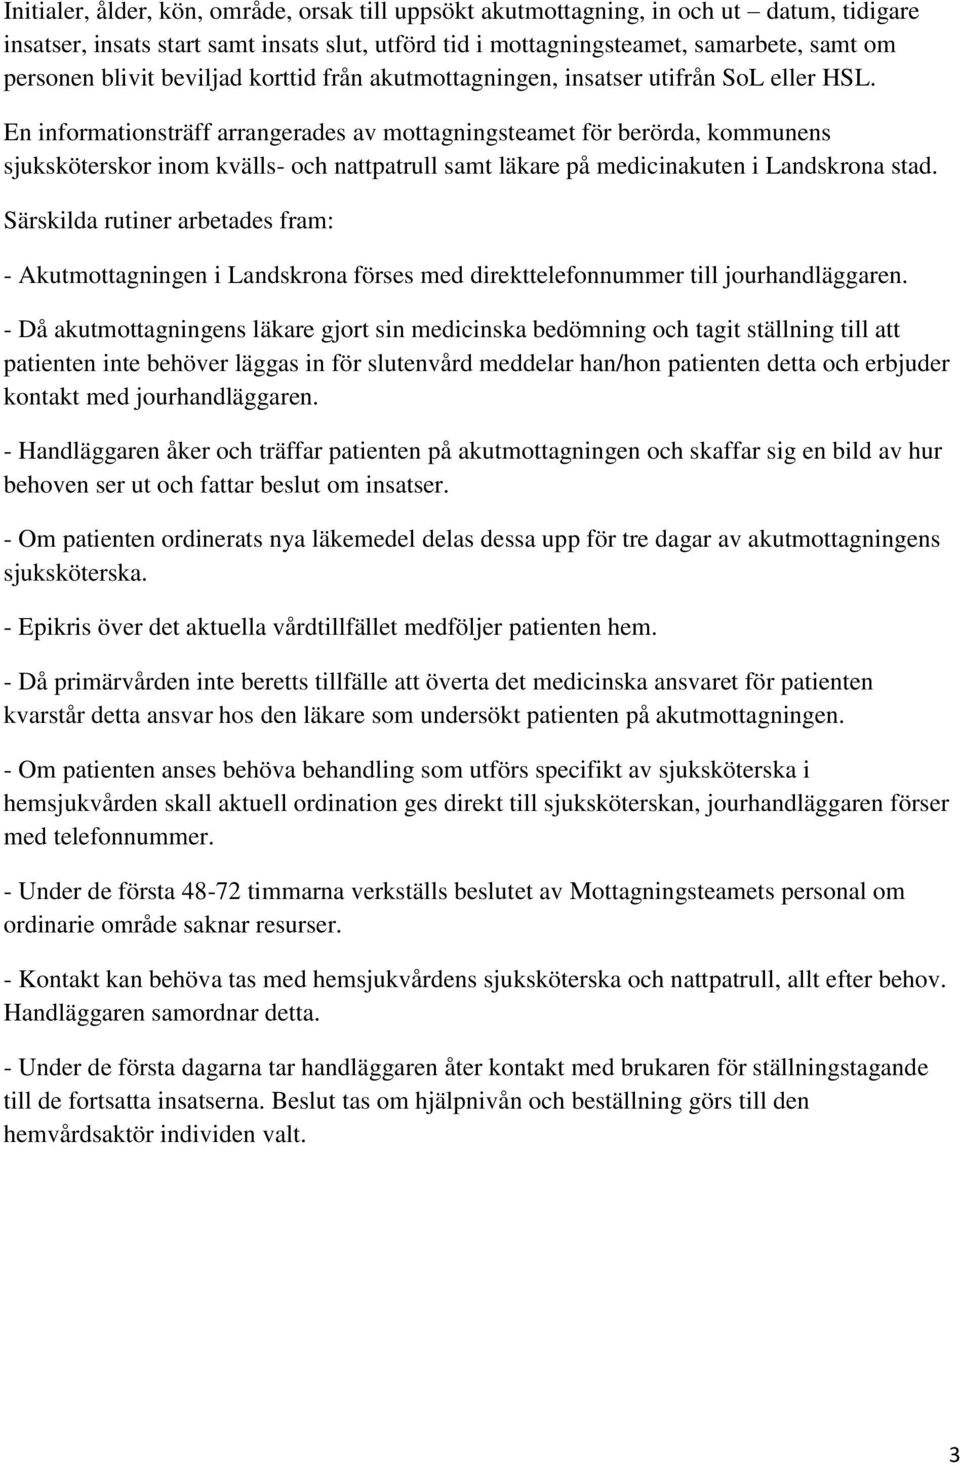 En informationsträff arrangerades av mottagningsteamet för berörda, kommunens sjuksköterskor inom kvälls- och nattpatrull samt läkare på medicinakuten i Landskrona stad.